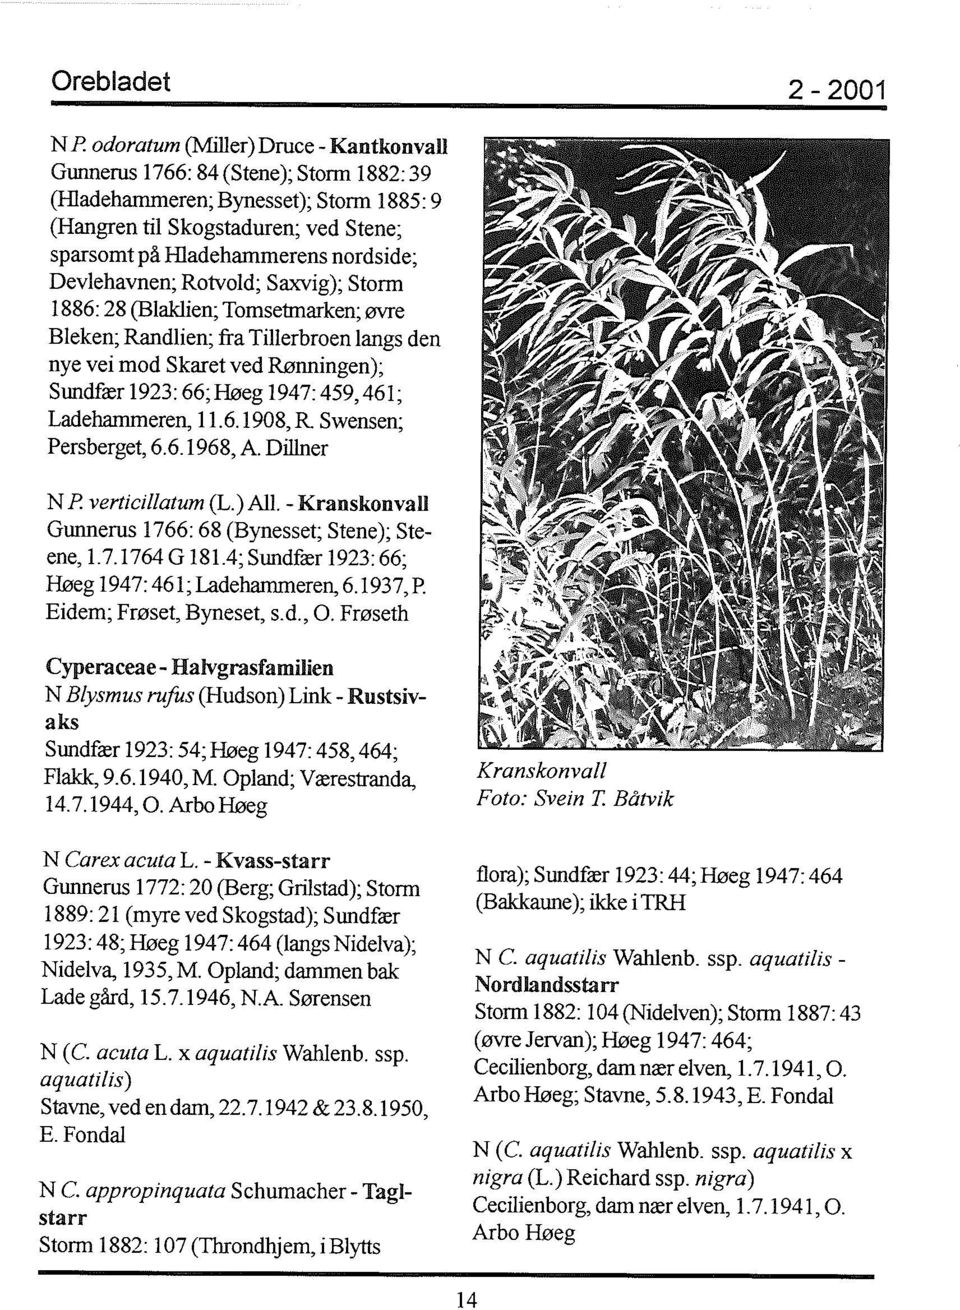 Ladehammeren, 11.6.1908,R Swensen; Persberget, 6.6.1968, A. Dillner N P verticillatum (L.) All. - Kranskonvall Gunnerus 1766: 68 (Bynesset; Stene); Steene, 1.7.1764 G 181.